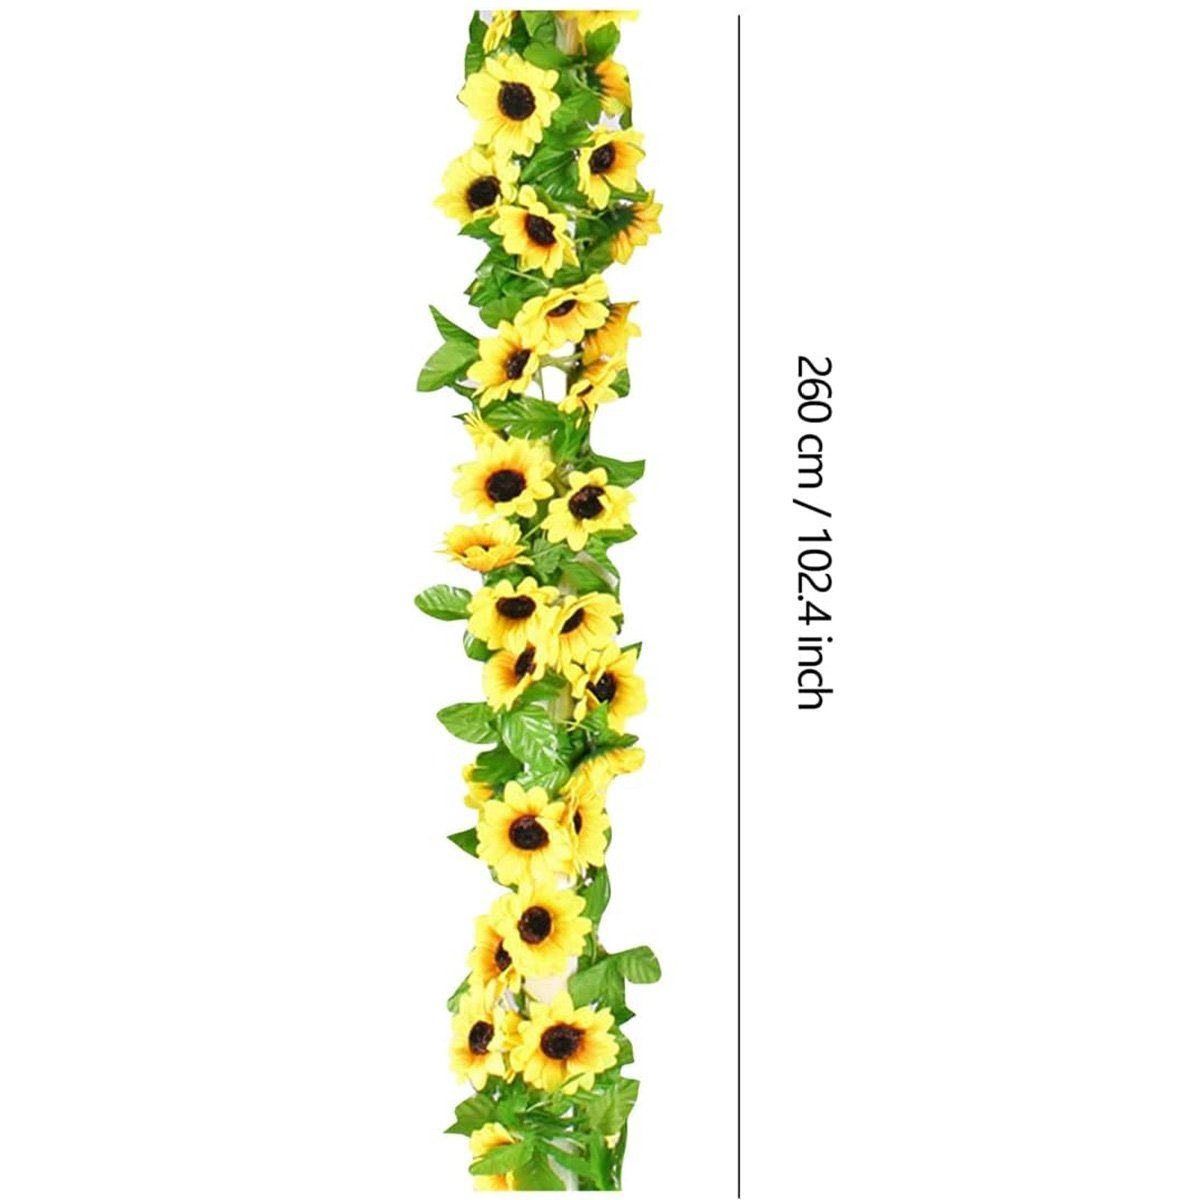 3 Seidenprodukte, Kunstblume Girlande, götäzer, hängende Stück Raumdekoration Blumen, Sonnenblumenrebe, künstliche Blumenarrangements,